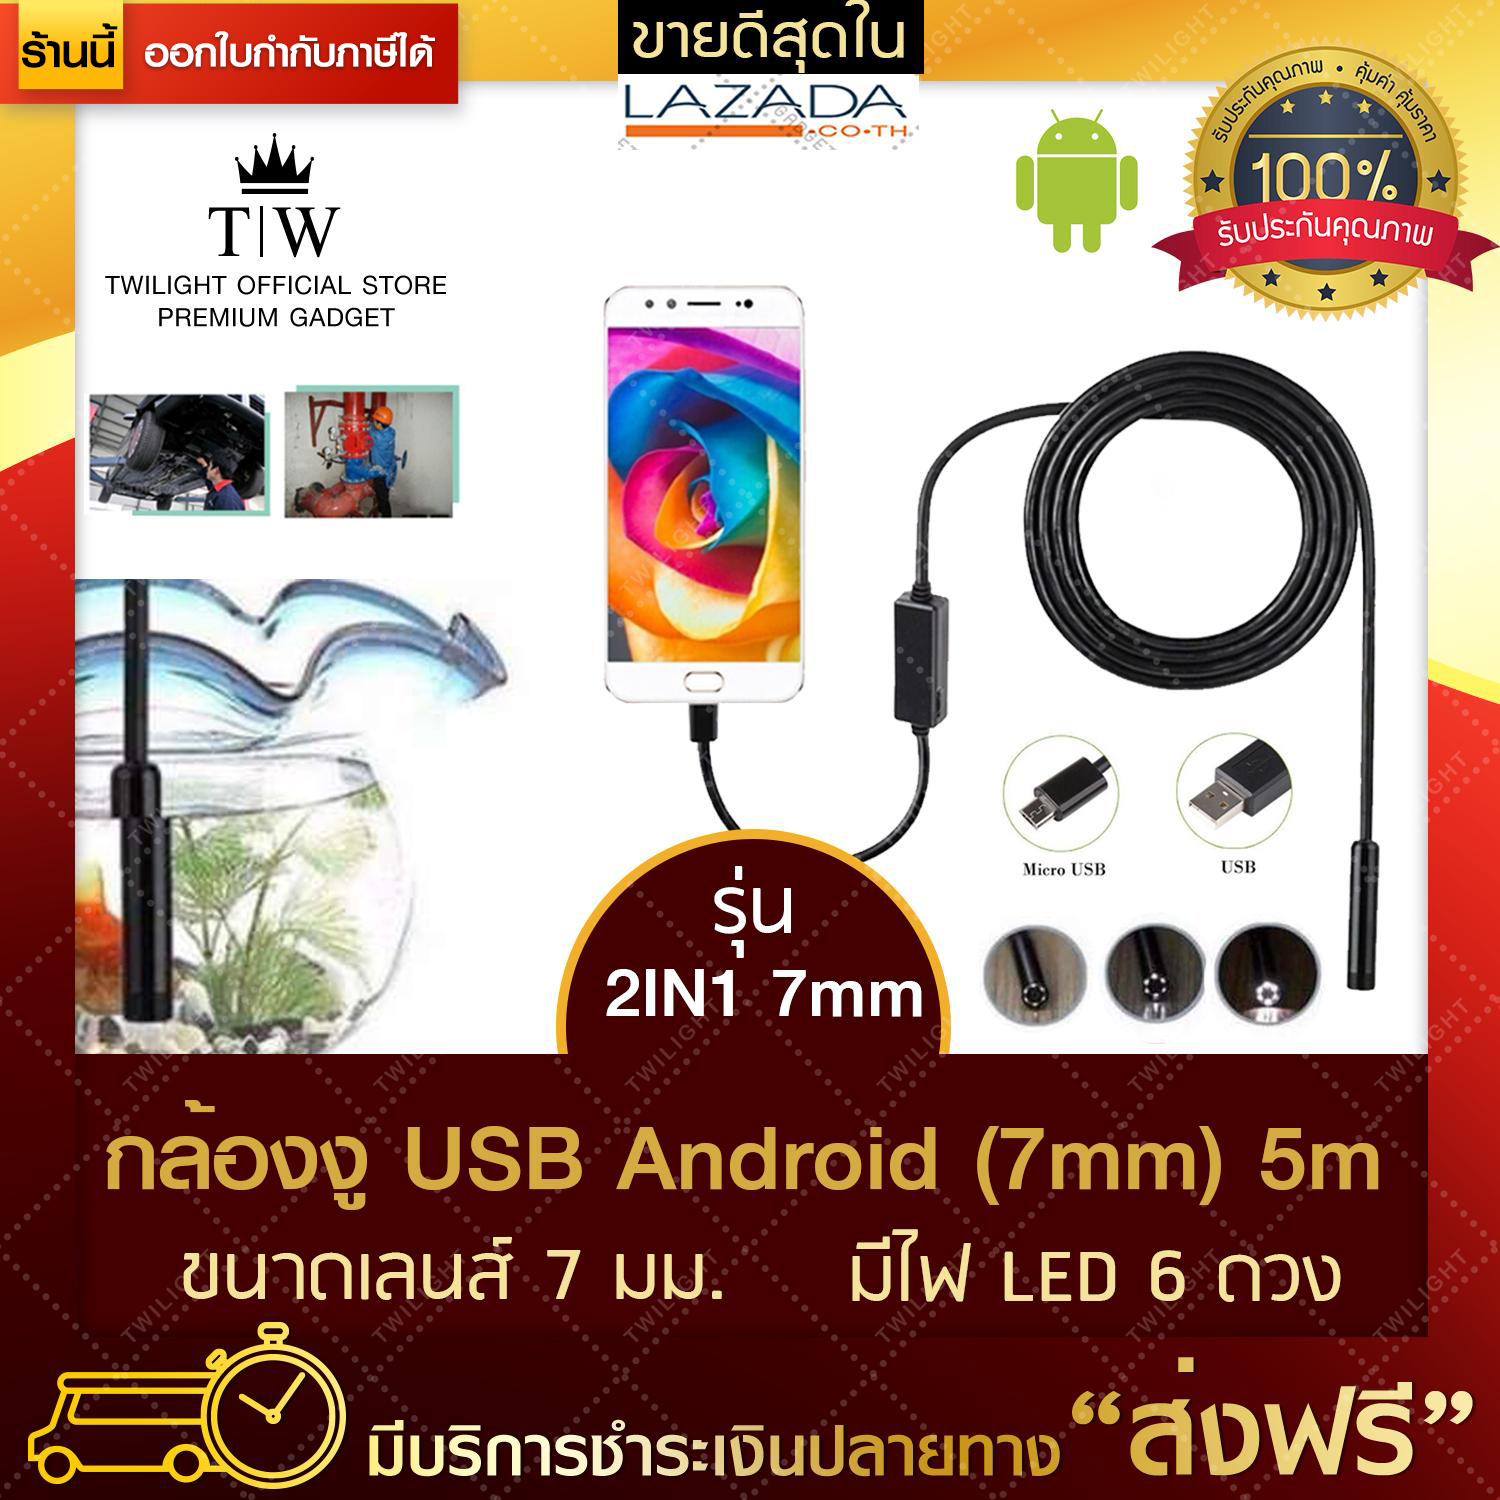 [ส่งฟรี] กล้องงูส่องท่อ กล้องงู USB Android 2in1 7mm ยาว5mกล้องงูส่องเครื่องยนต์ กล้องเอนโดสโคป กล้องจิ๋ว กล้องขนาดเล็ก (ขอใบกำกับภาษีได้)